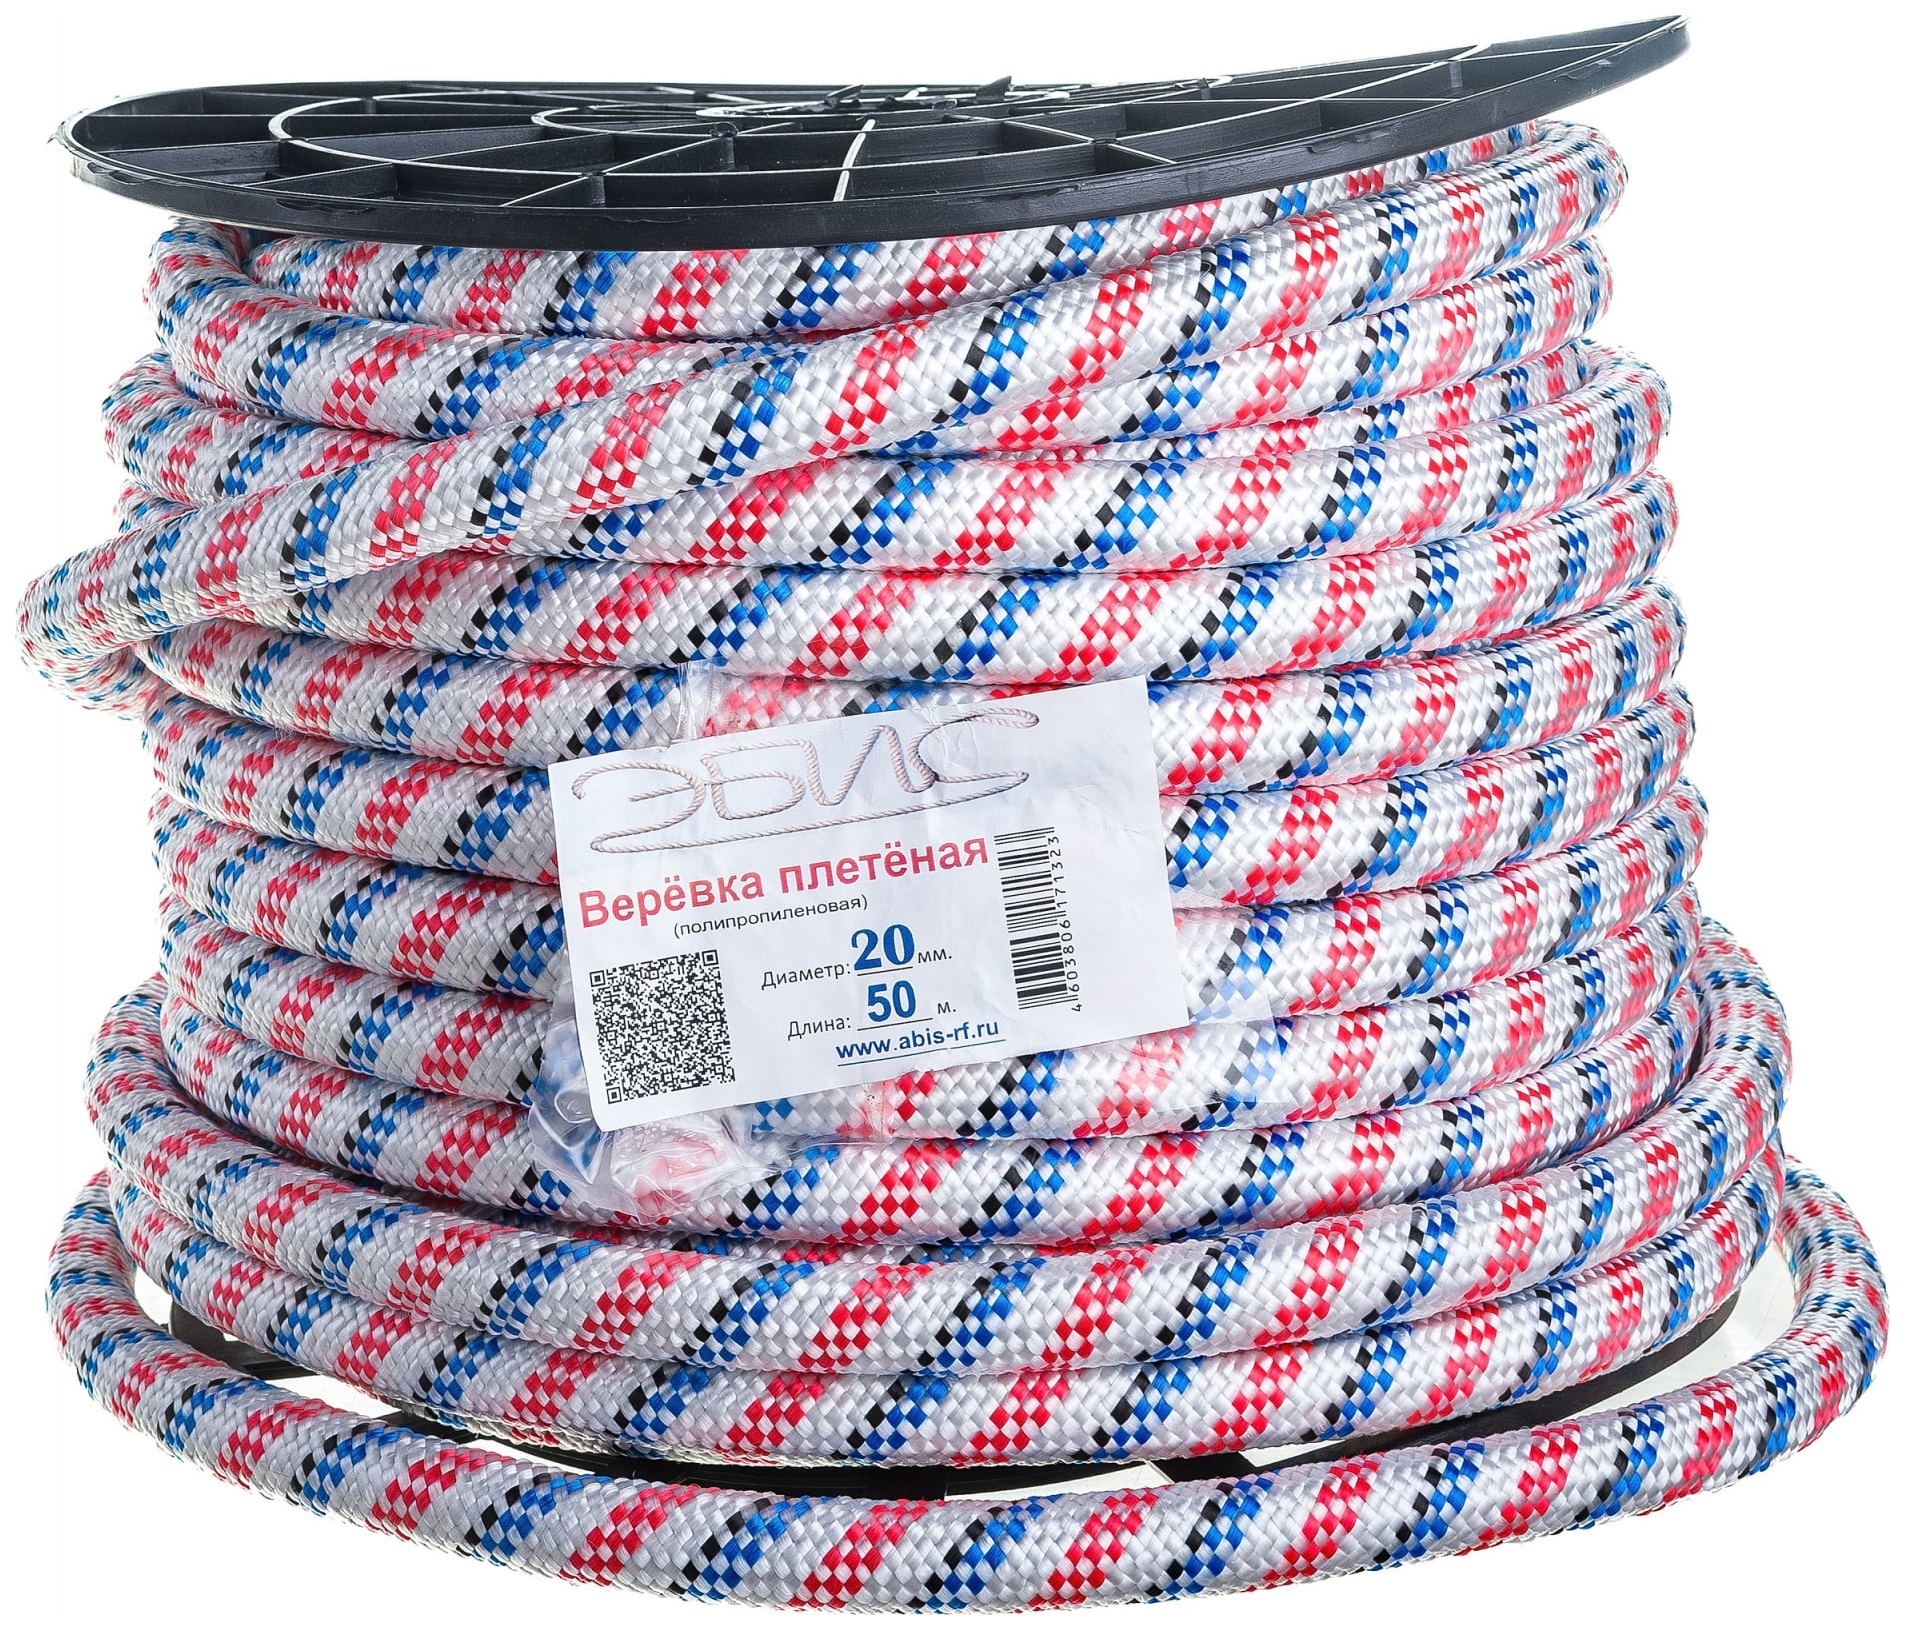 ЭБИС Верёвка плетёная ПП 20 мм (50 м) цветная катушка 71323